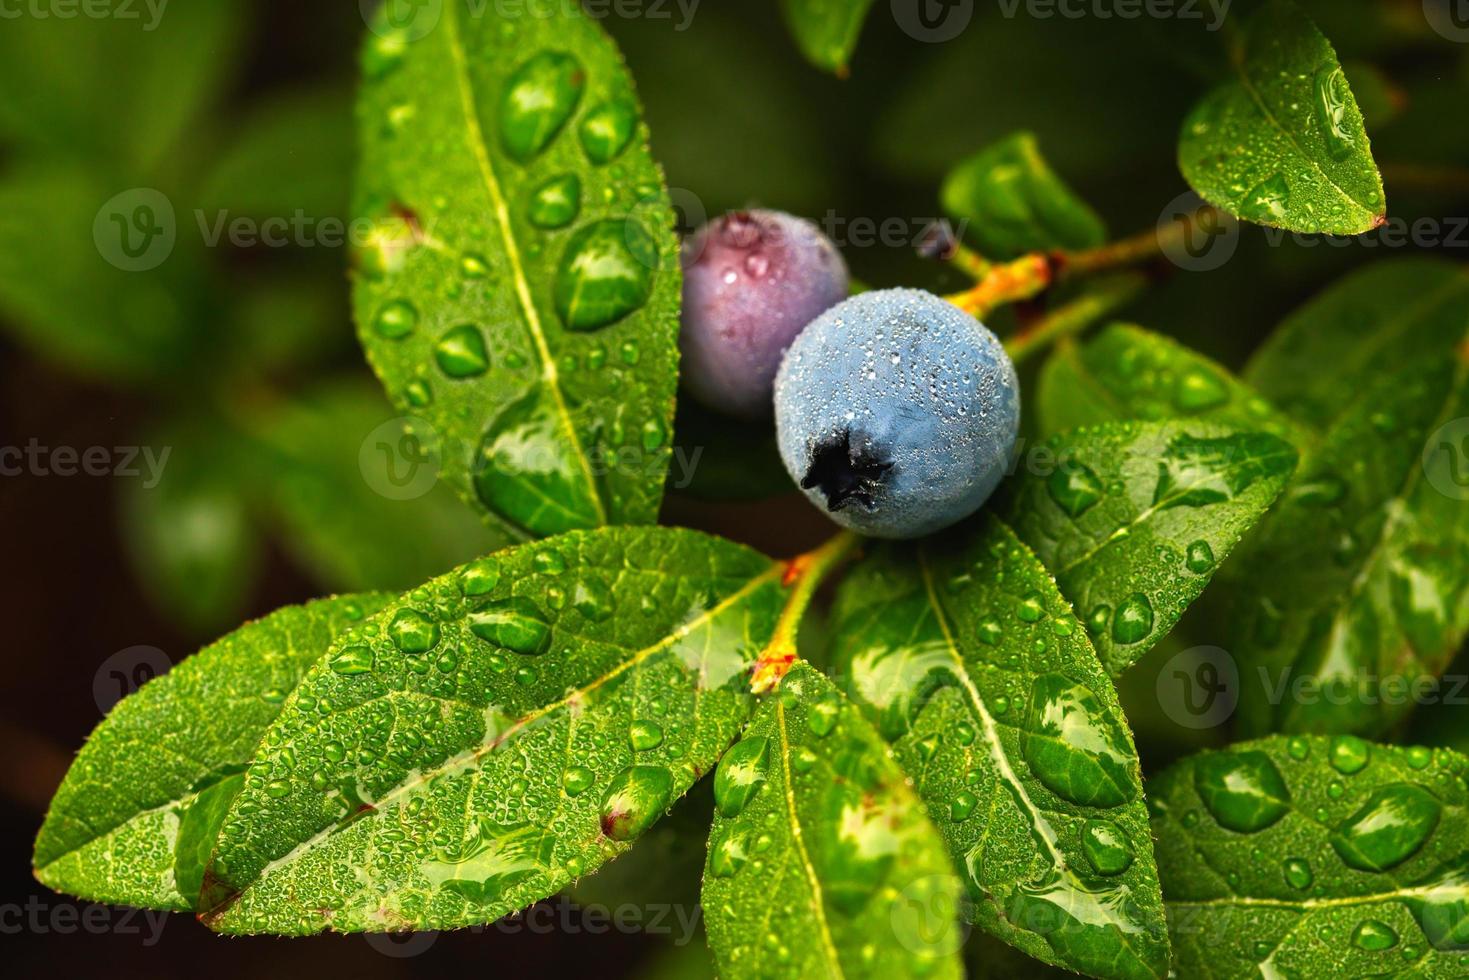 dagg droppar på vild lowbush blåbär - vaccinium angustifolium foto